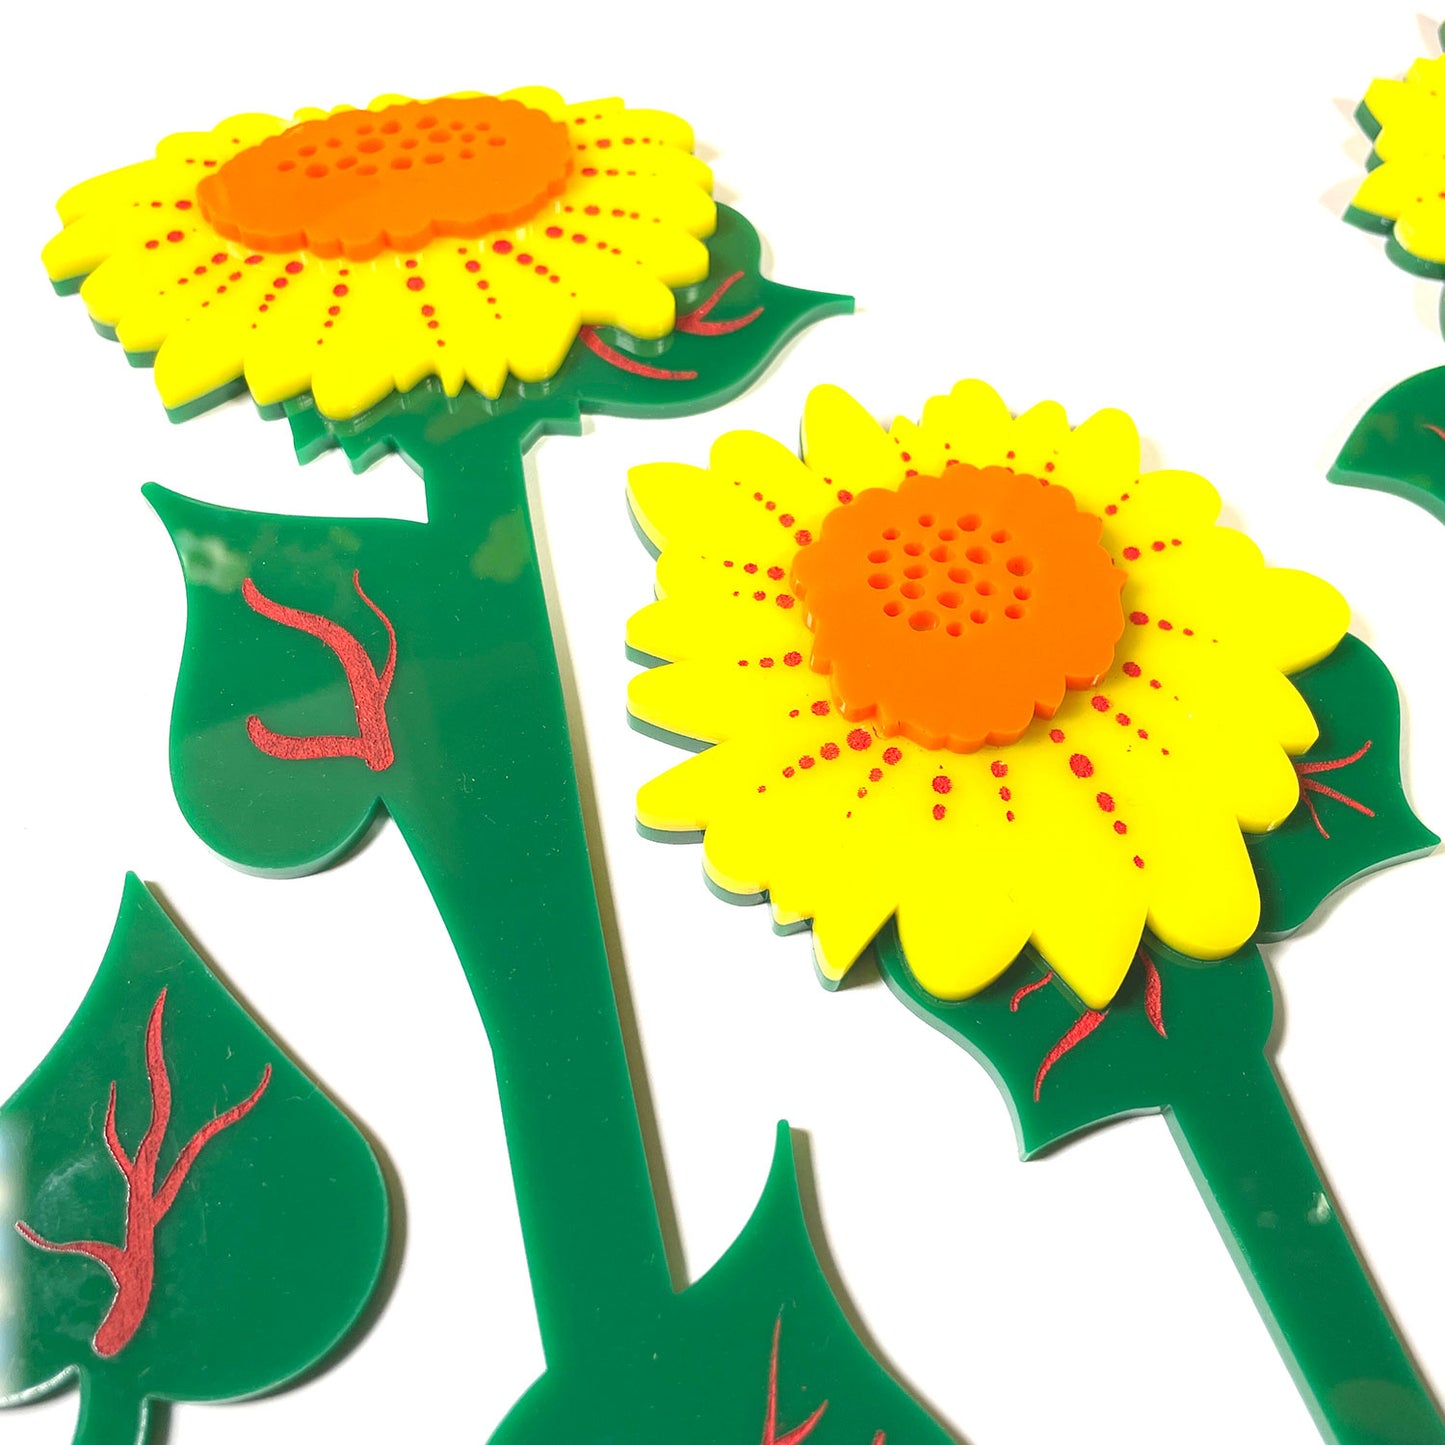 Cheerful Sunflower Bouquet